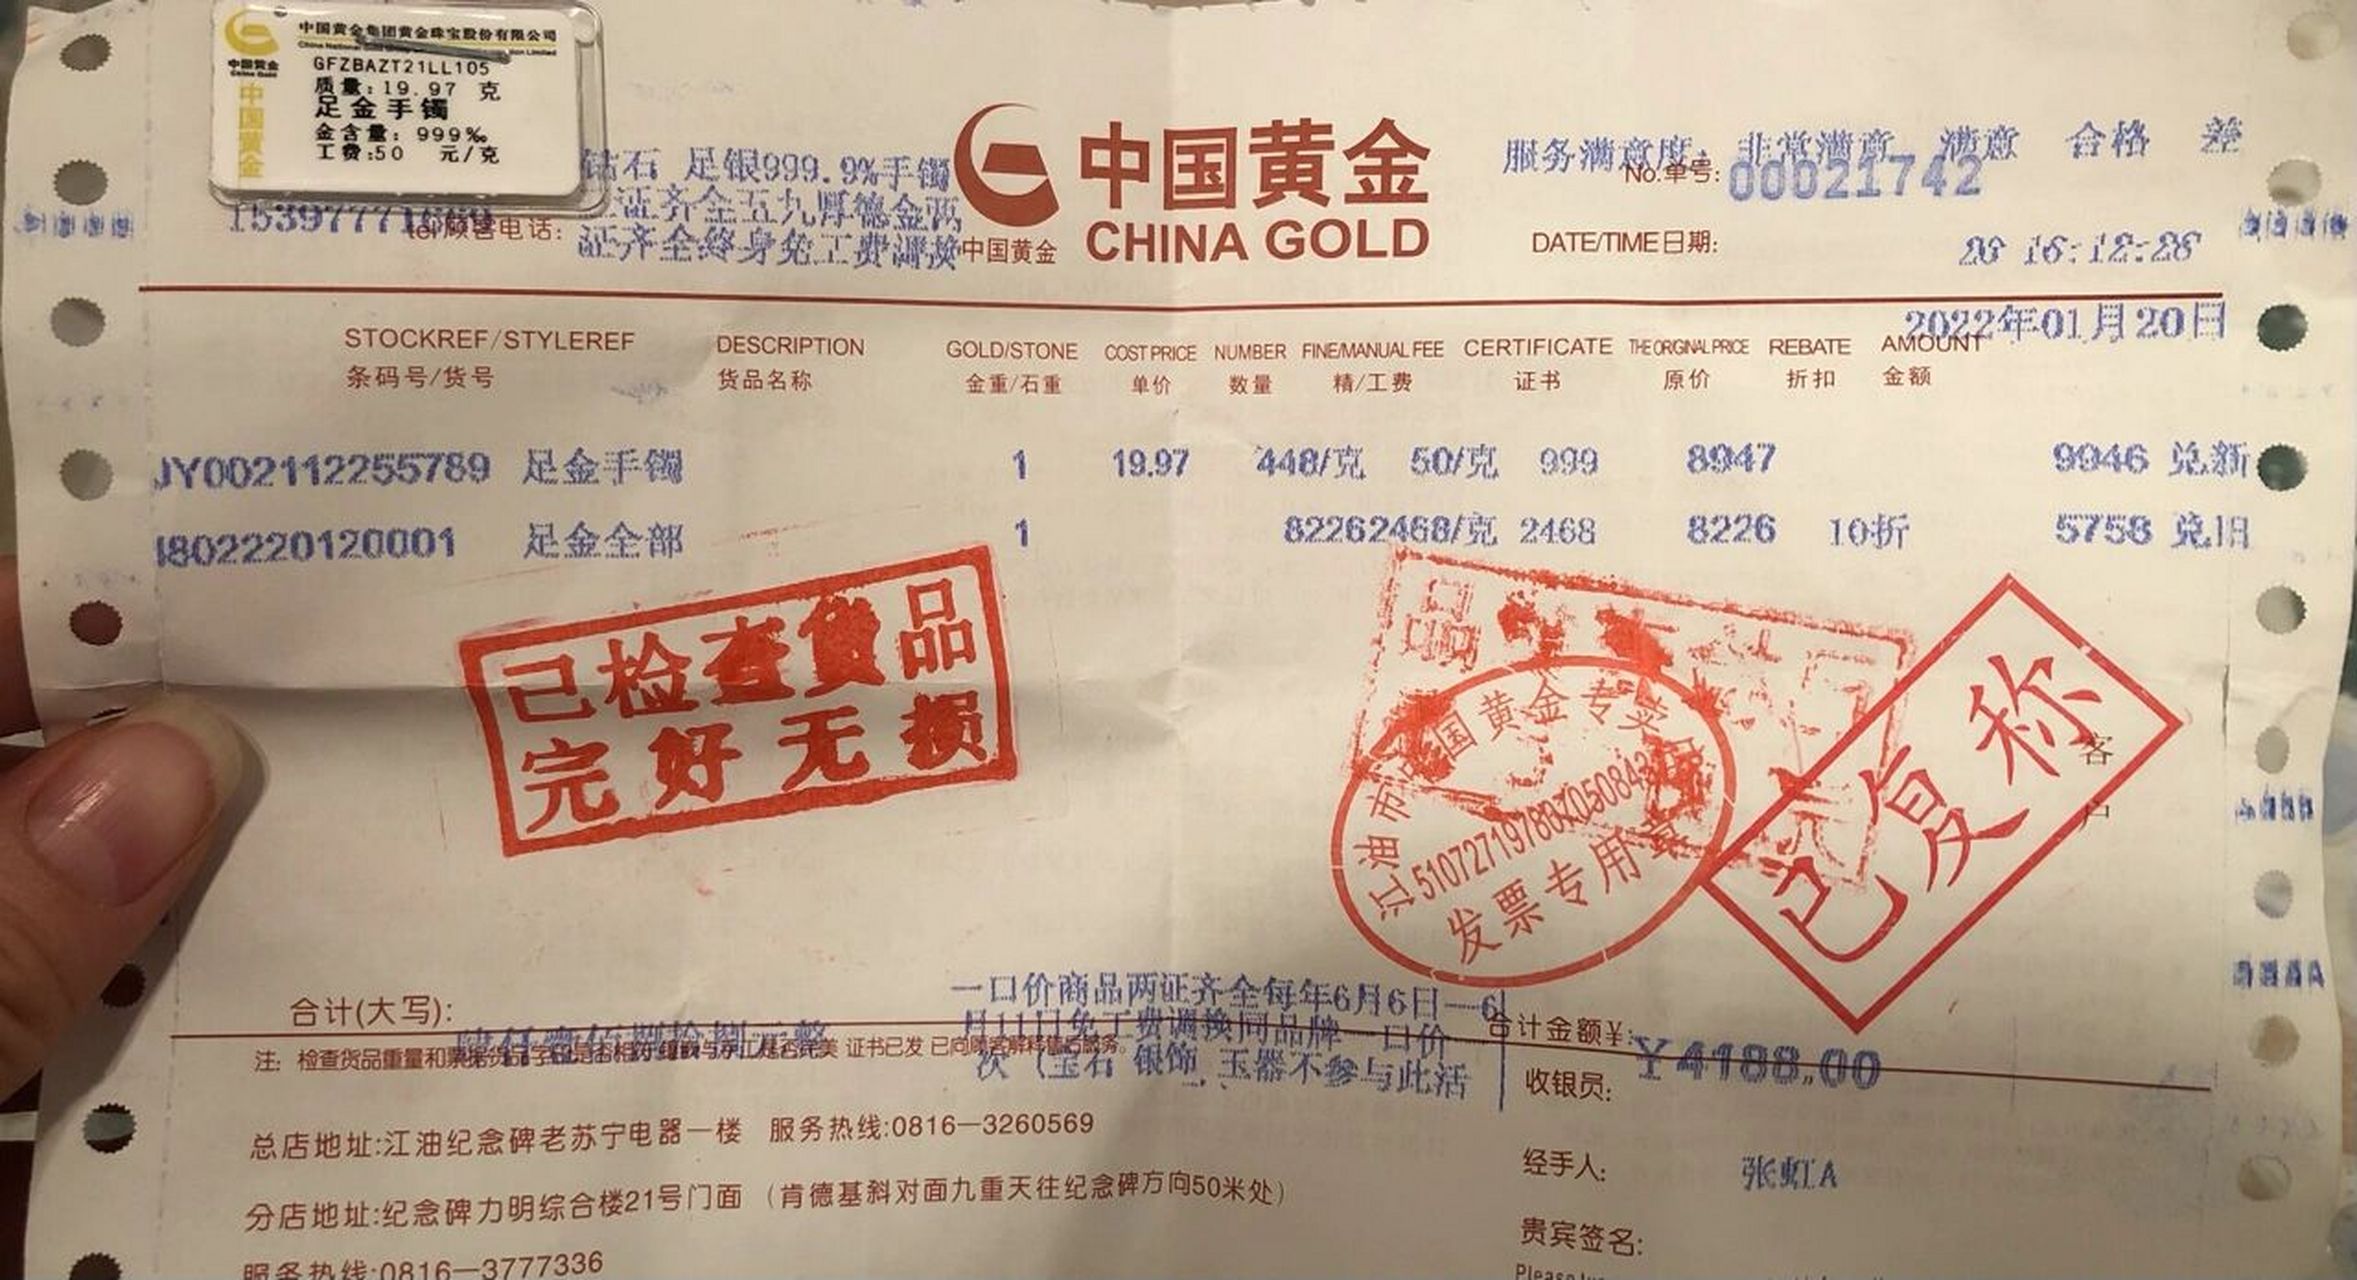 要去中国黄金买的注意了(二) (二) 第二天下午去了,反正就是不给称,就